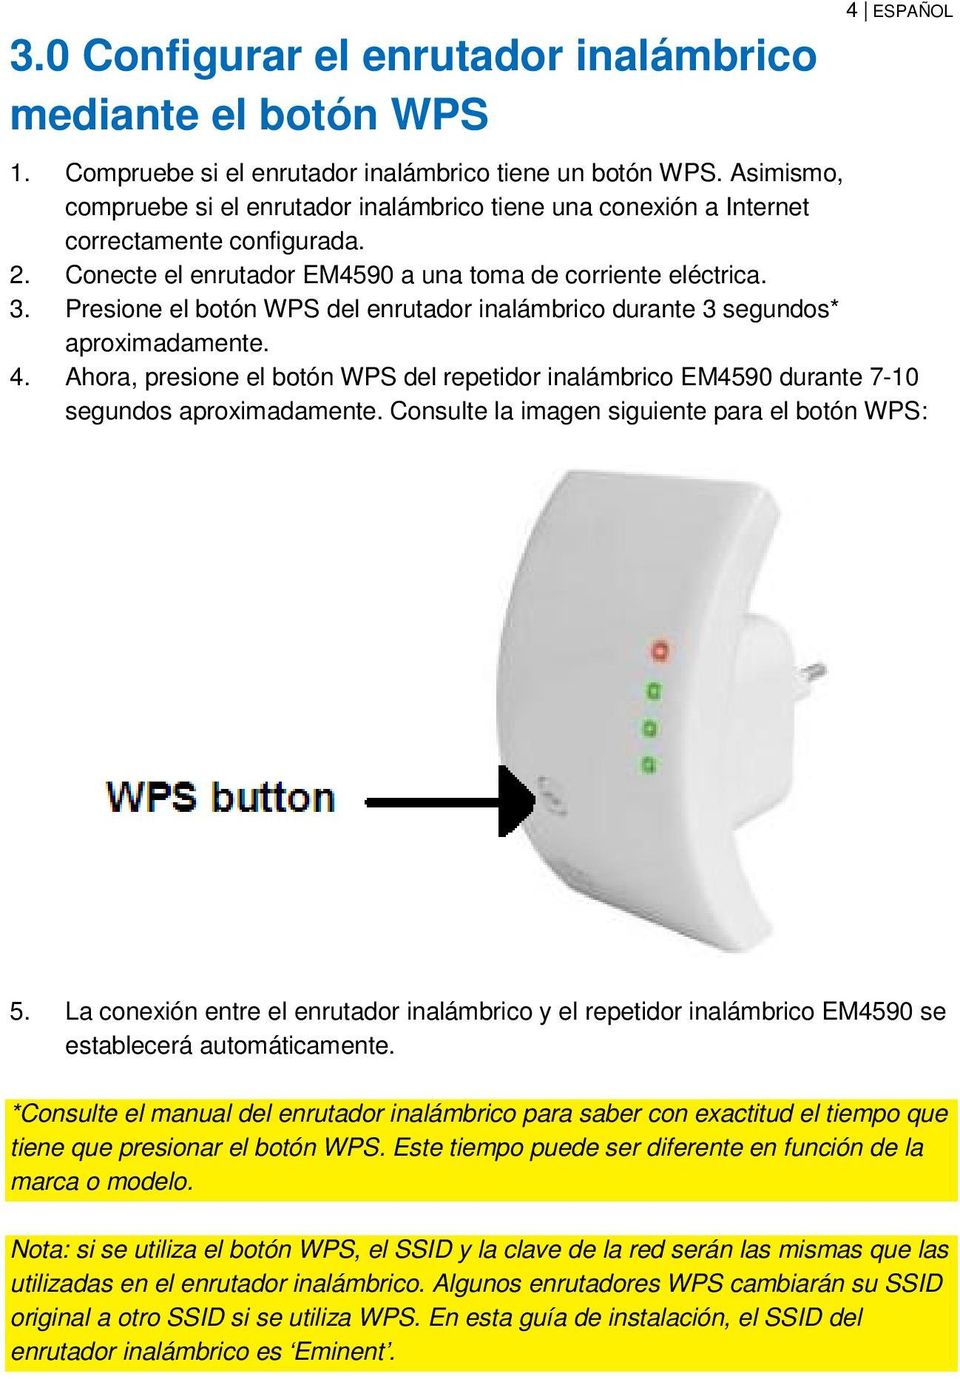 Presione el botón WPS del enrutador inalámbrico durante 3 segundos* aproximadamente. 4. Ahora, presione el botón WPS del repetidor inalámbrico EM4590 durante 7-10 segundos aproximadamente.